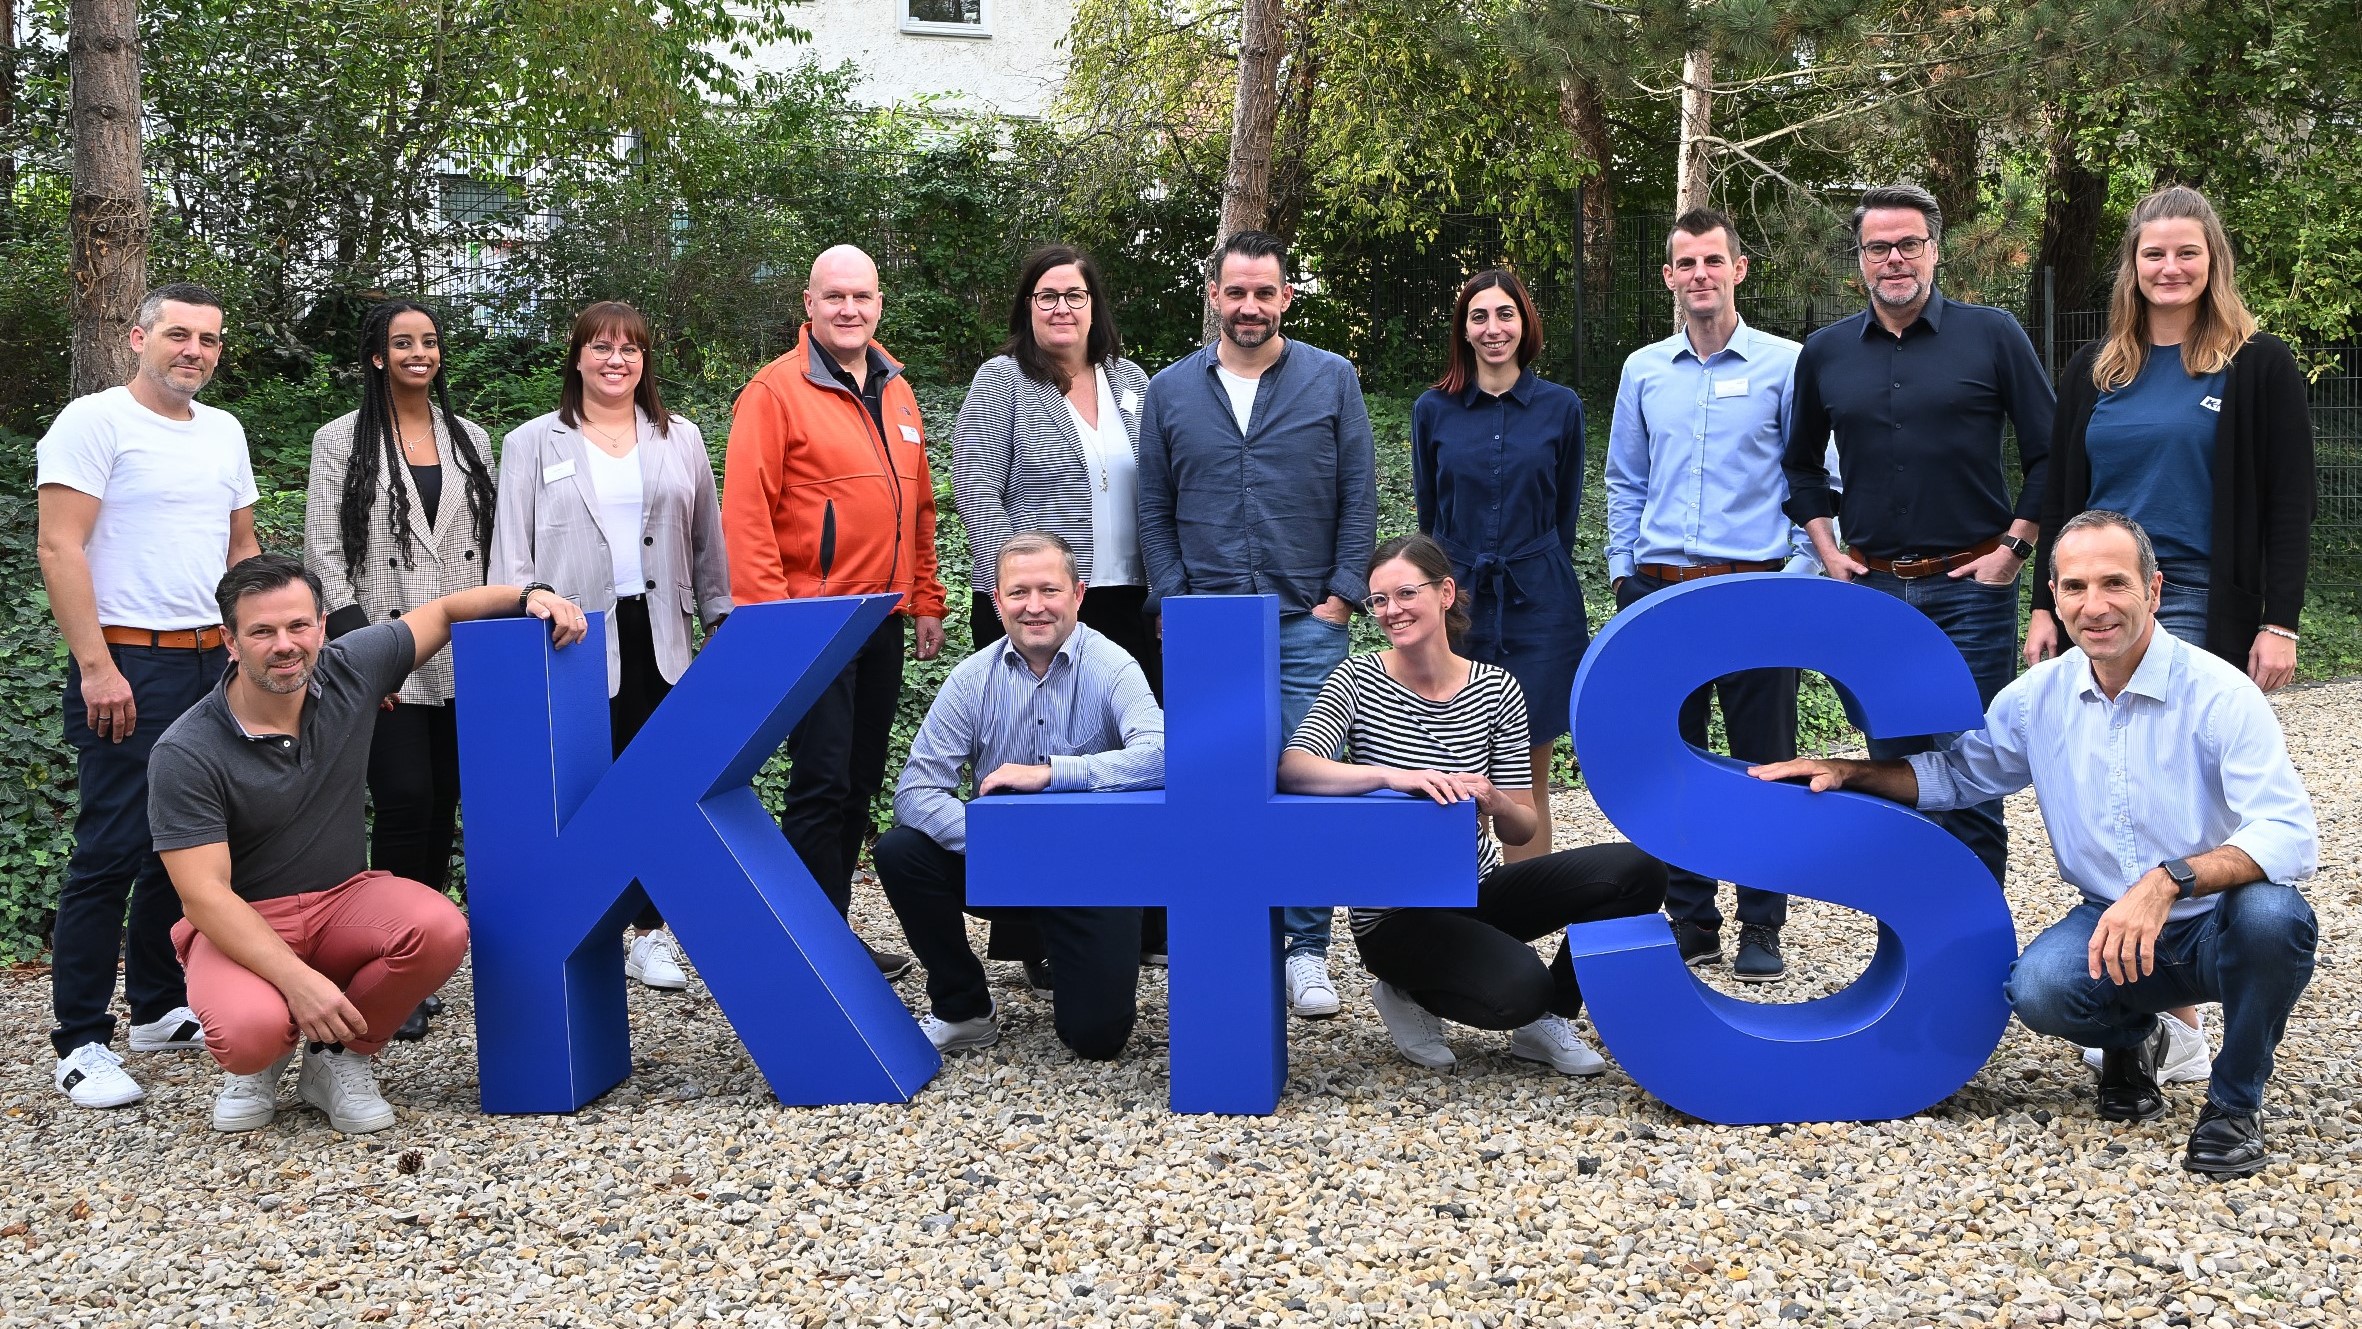 Gruppenfoto von 15 Mitarbeiter:innen der K+S AG die hinter großen blauen K+S Buchstaben stehen und hocken. 